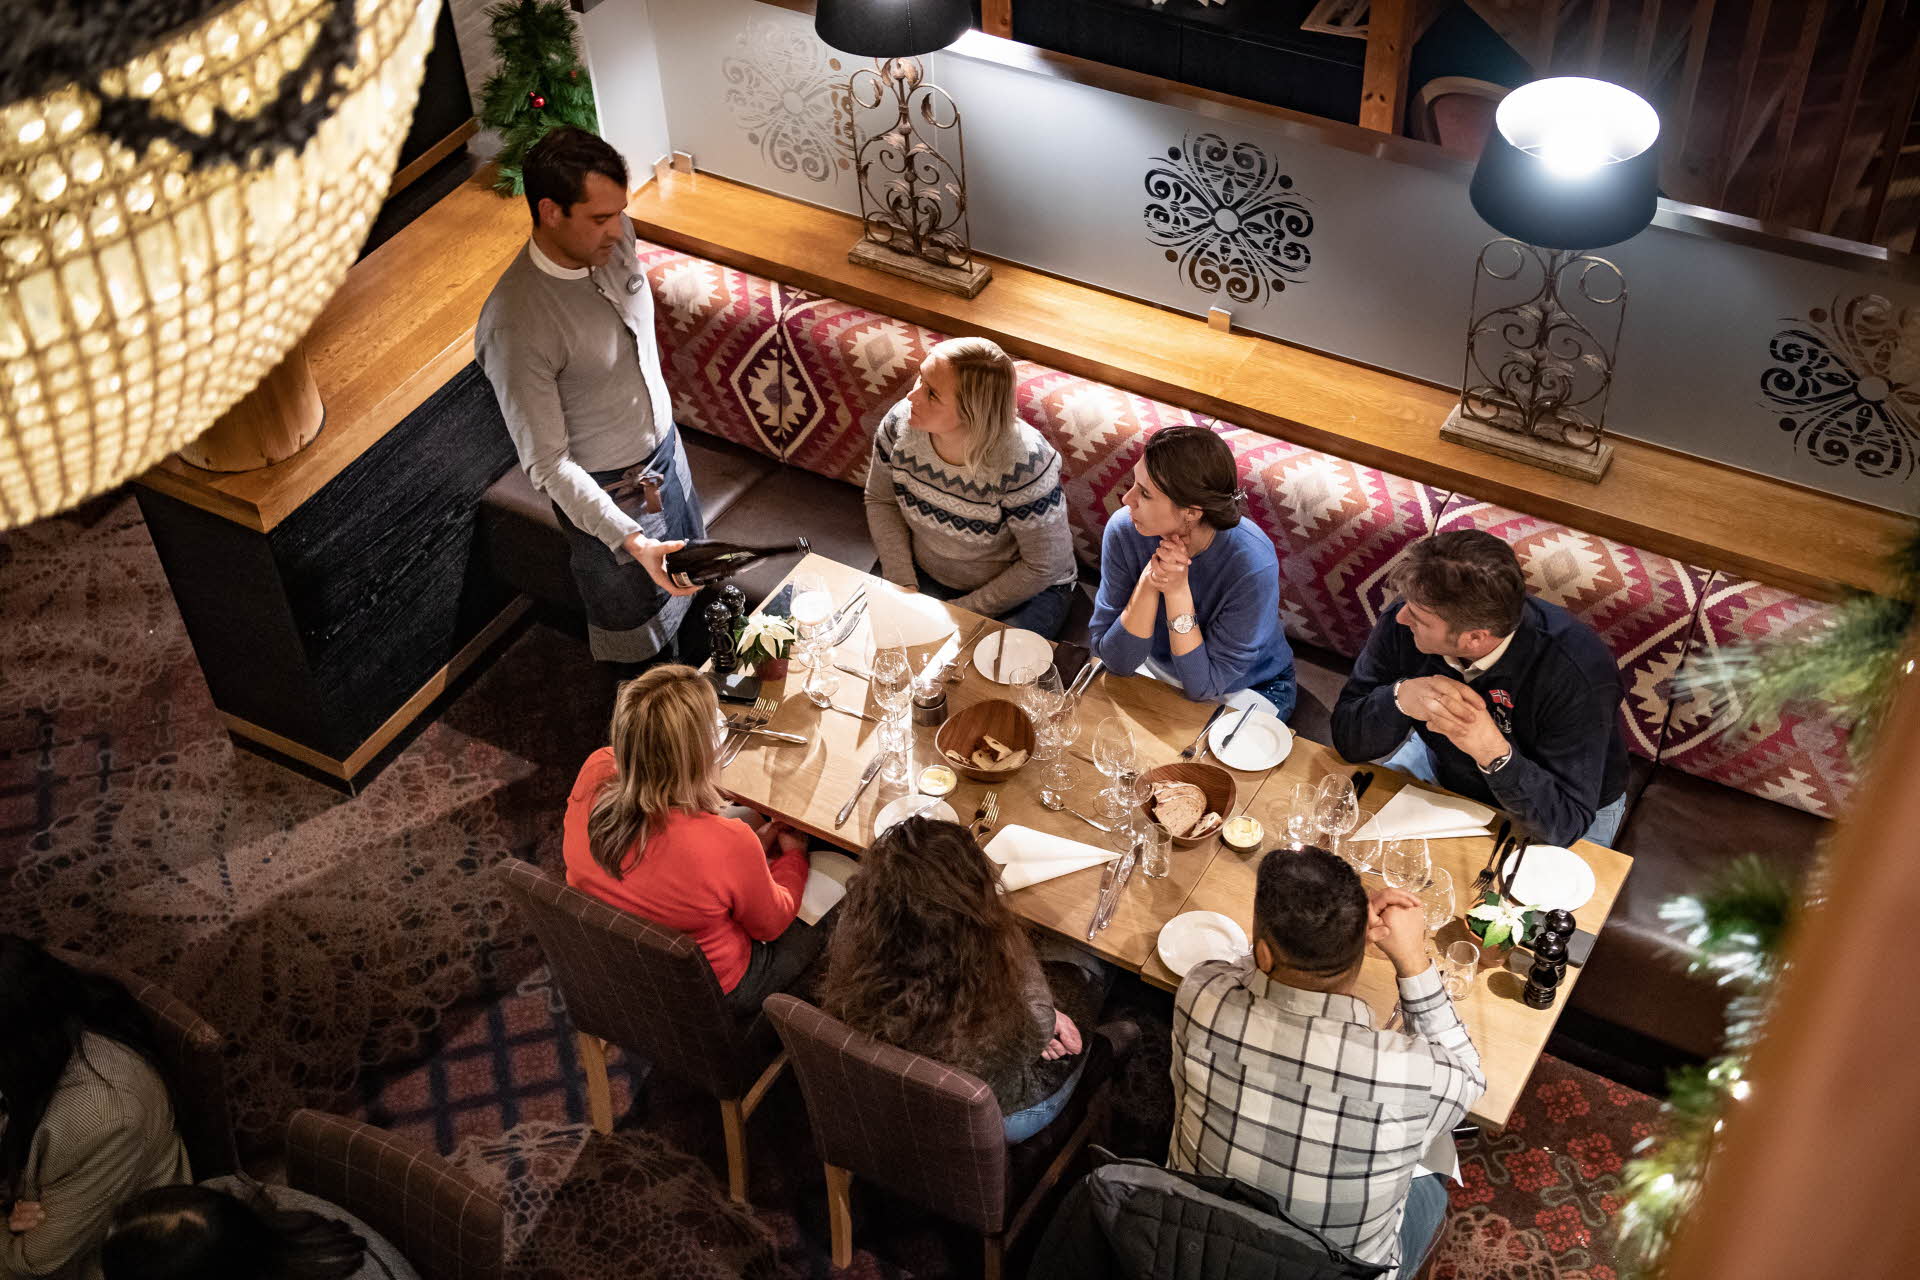 レストラン「アルヴェン」のテーブルに着いた6人のゲスト。ワインを注ぐウェイター。シャンデリアを手前に上から見たレストラン。